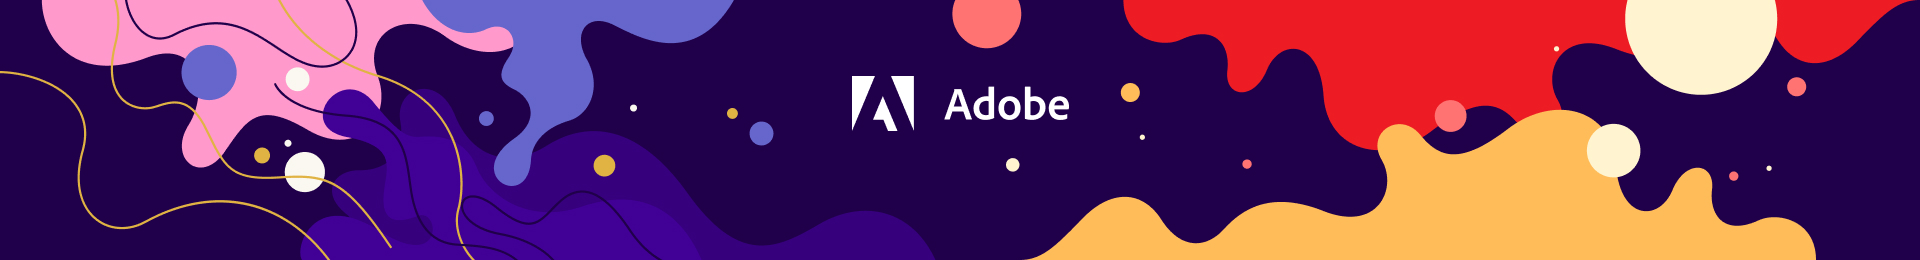 Adobe Systems в Softline